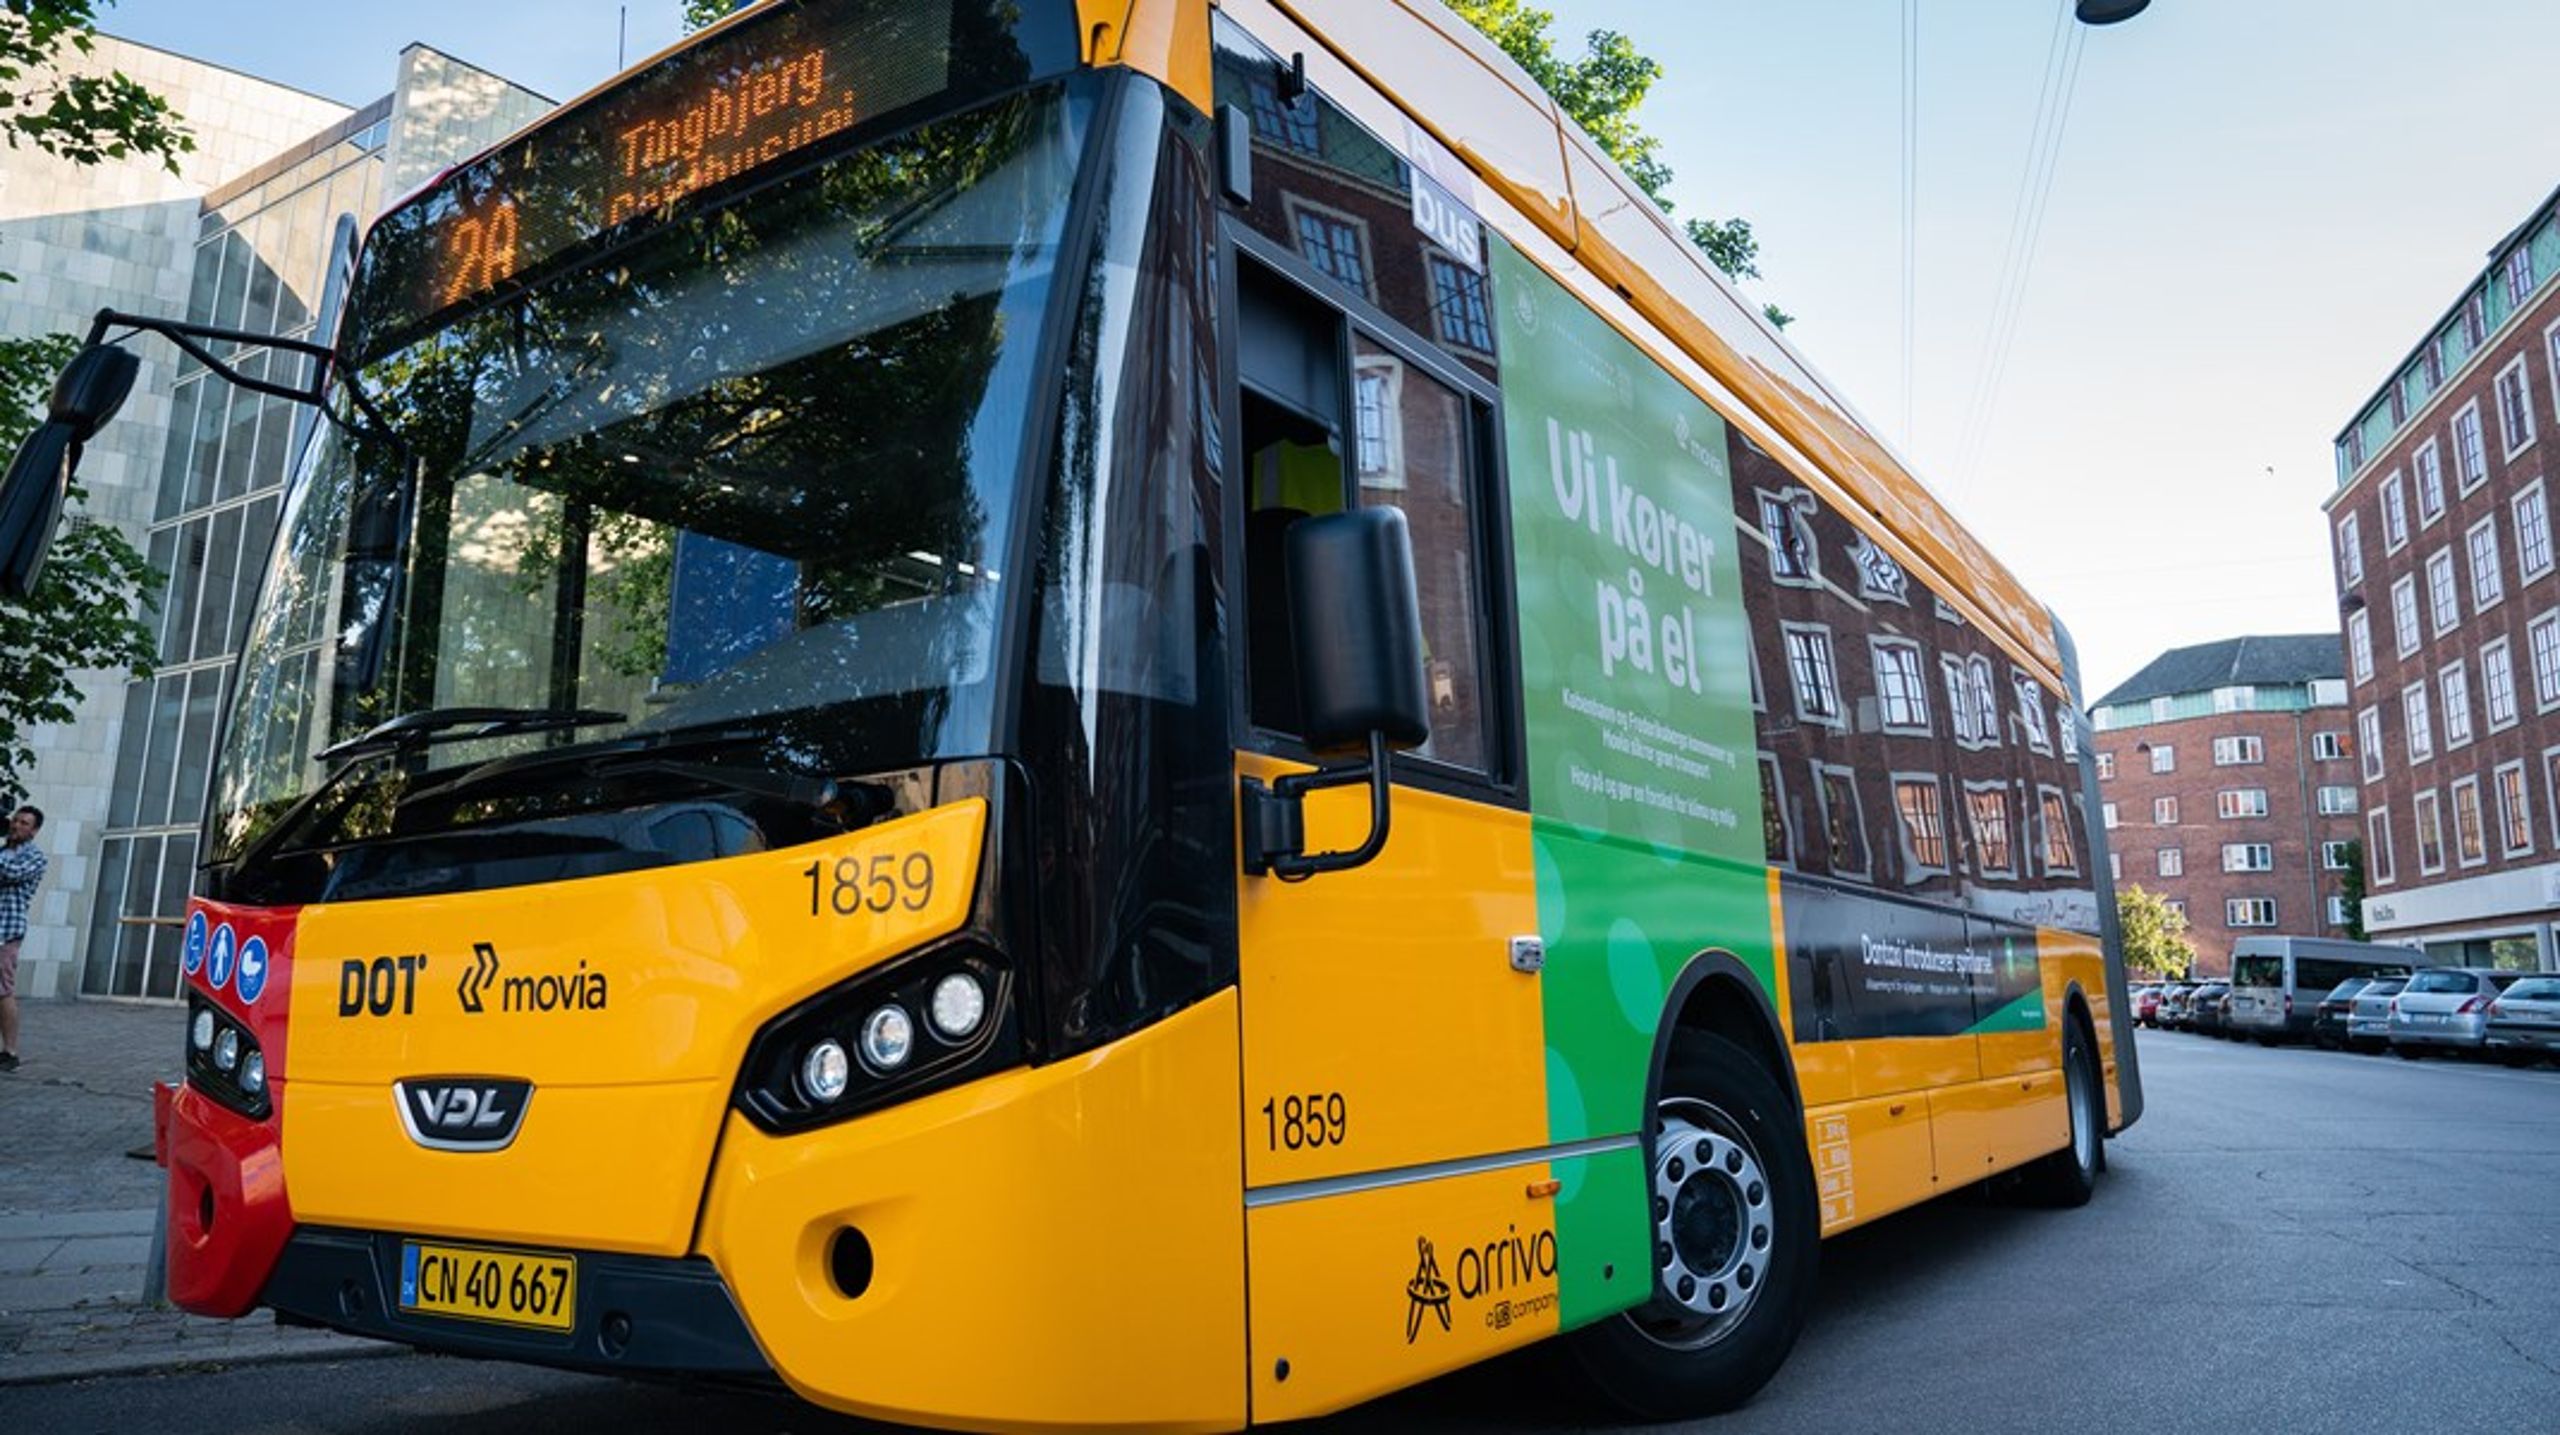 Hvis ikke danskerne kommer tilbage i busserne, vil det føre til
dårligere betjening og færre ruter, skriver Michael Møller Nielsen.